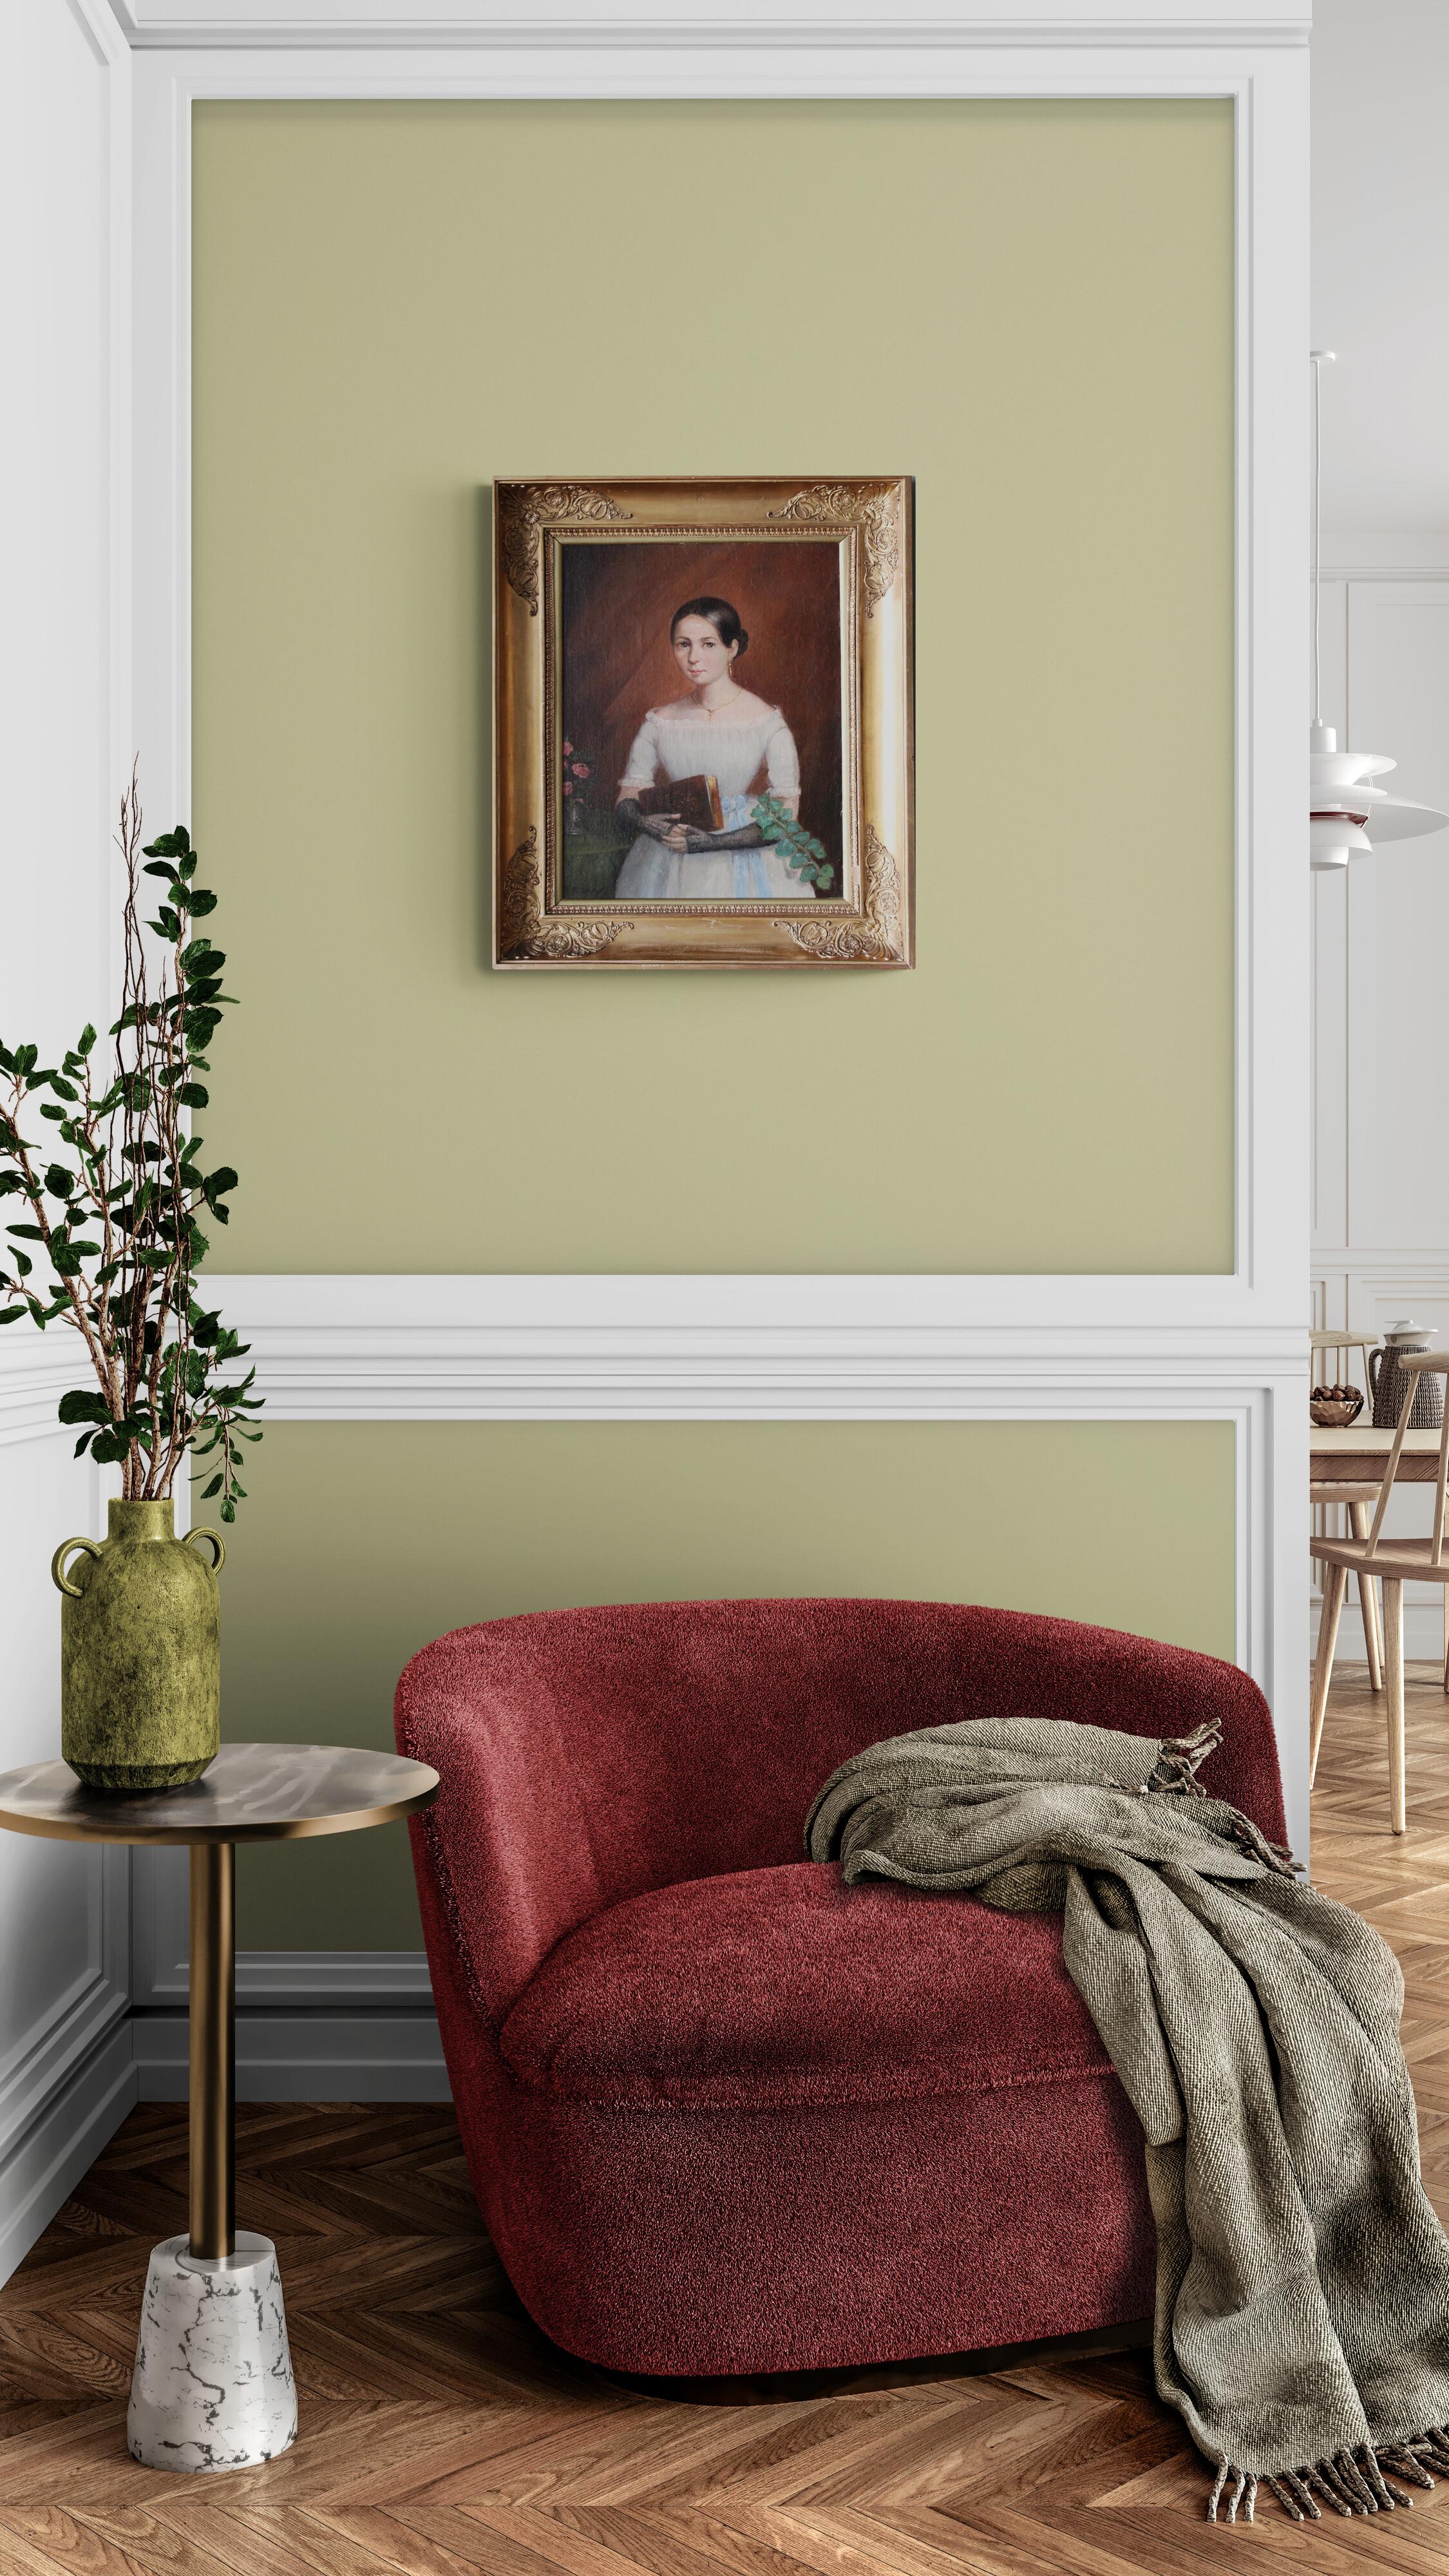 Antique portrait of a woman, French romantic oil painting, female portrait 5